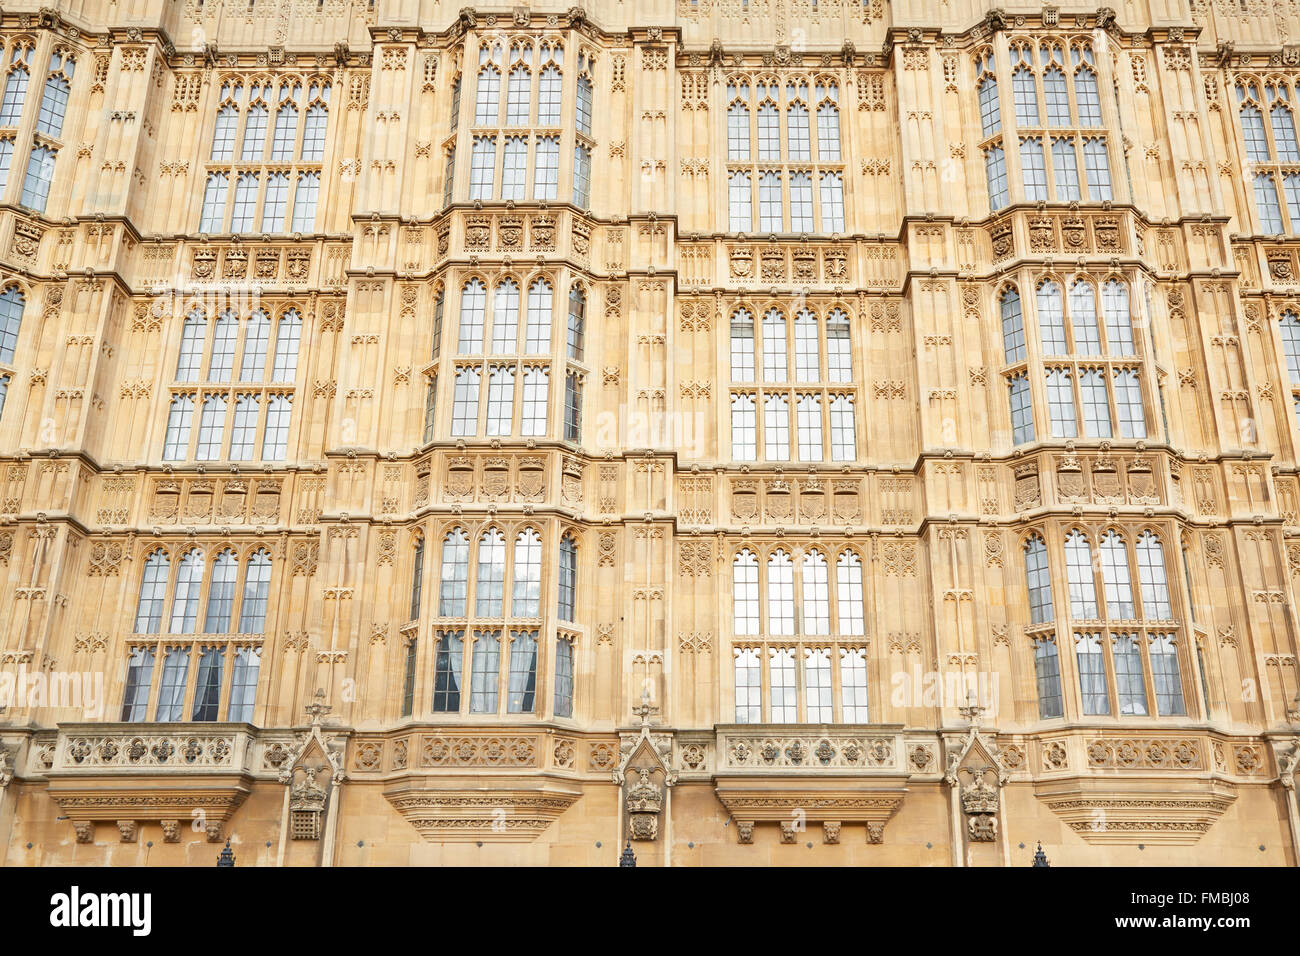 La arquitectura gótica, Palacio de Westminster en Londres fachada Foto de stock